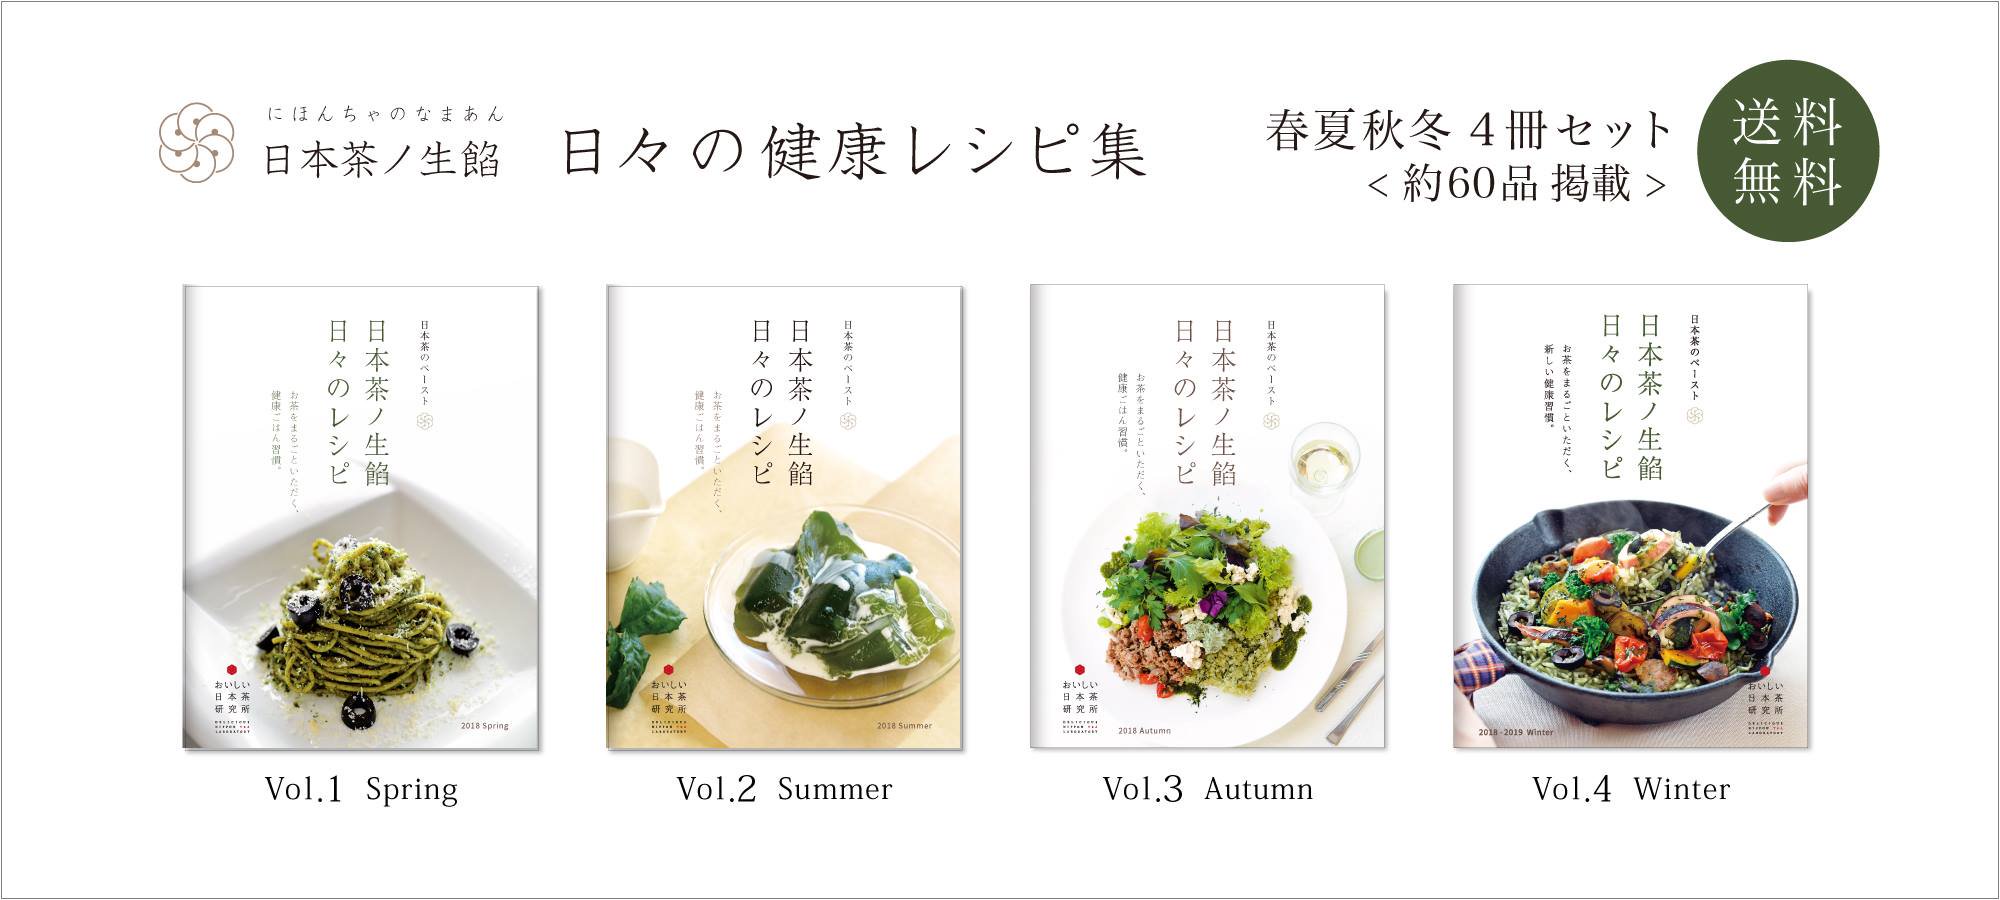 日本茶ノ生餡、日本茶のペーストを使った日々の健康レシピ「春夏秋冬4冊セット」。おいしい日本茶研究所。